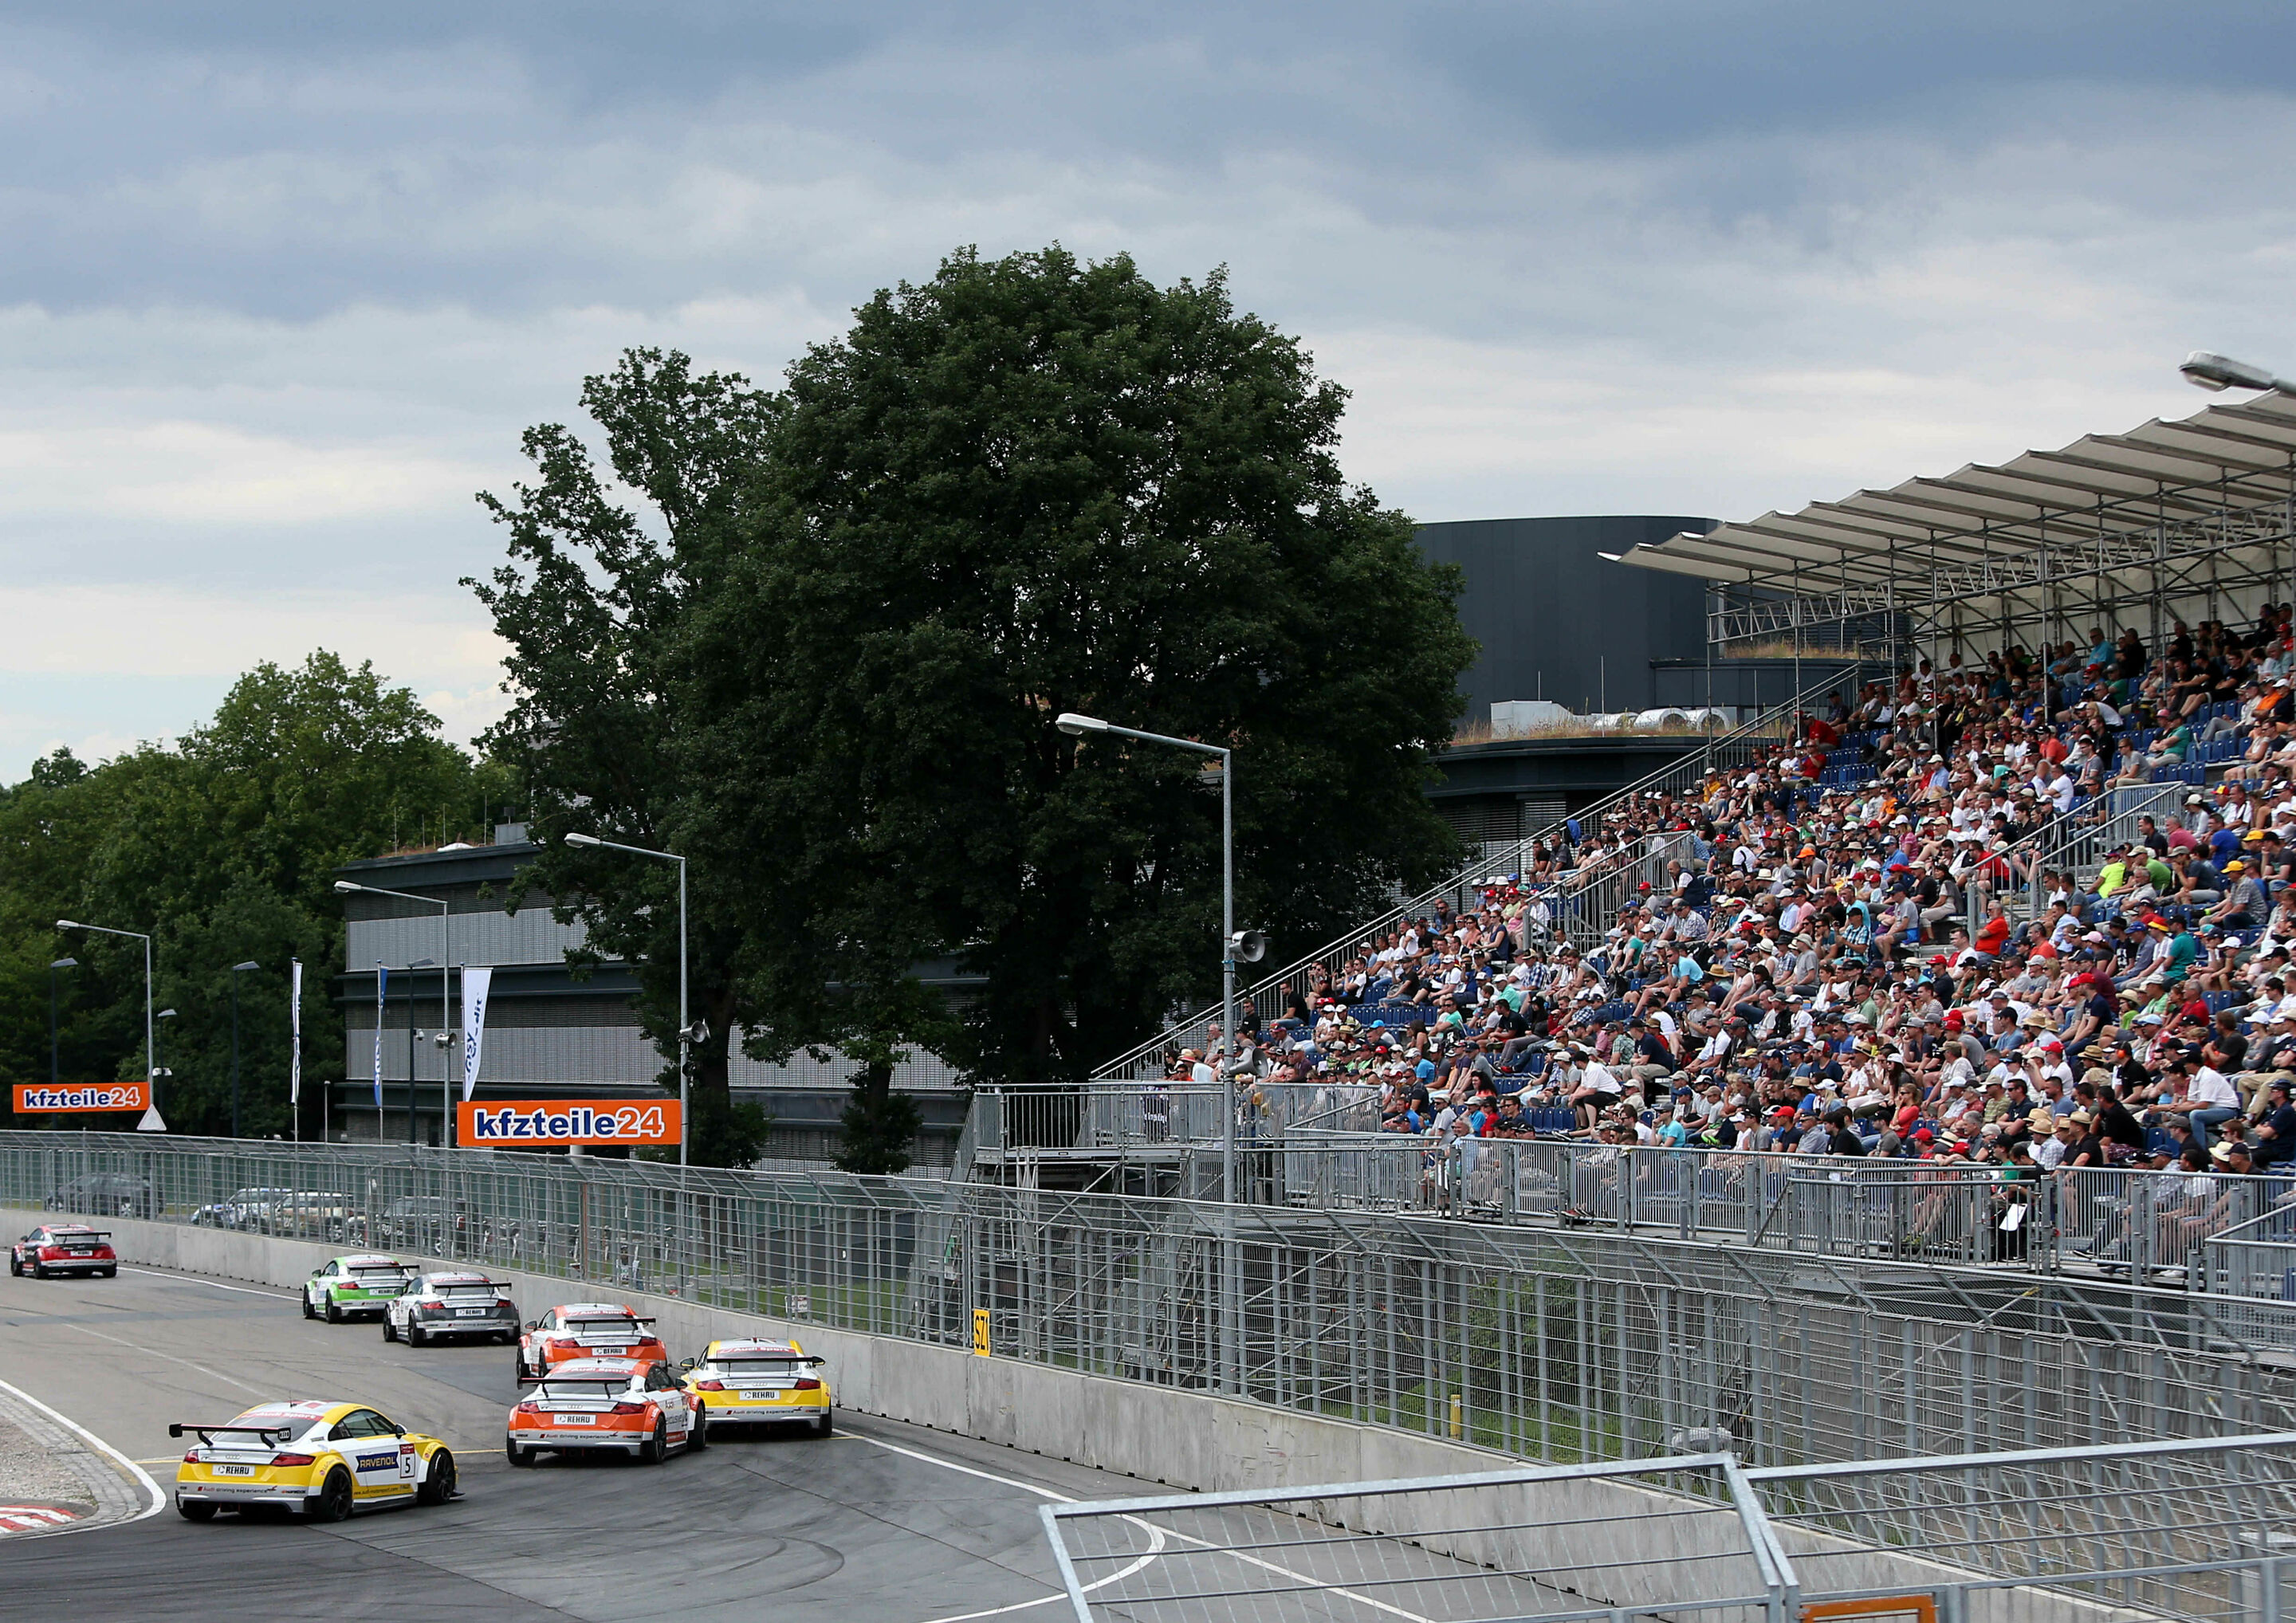 Audi Sport TT Cup, Norisring 2016